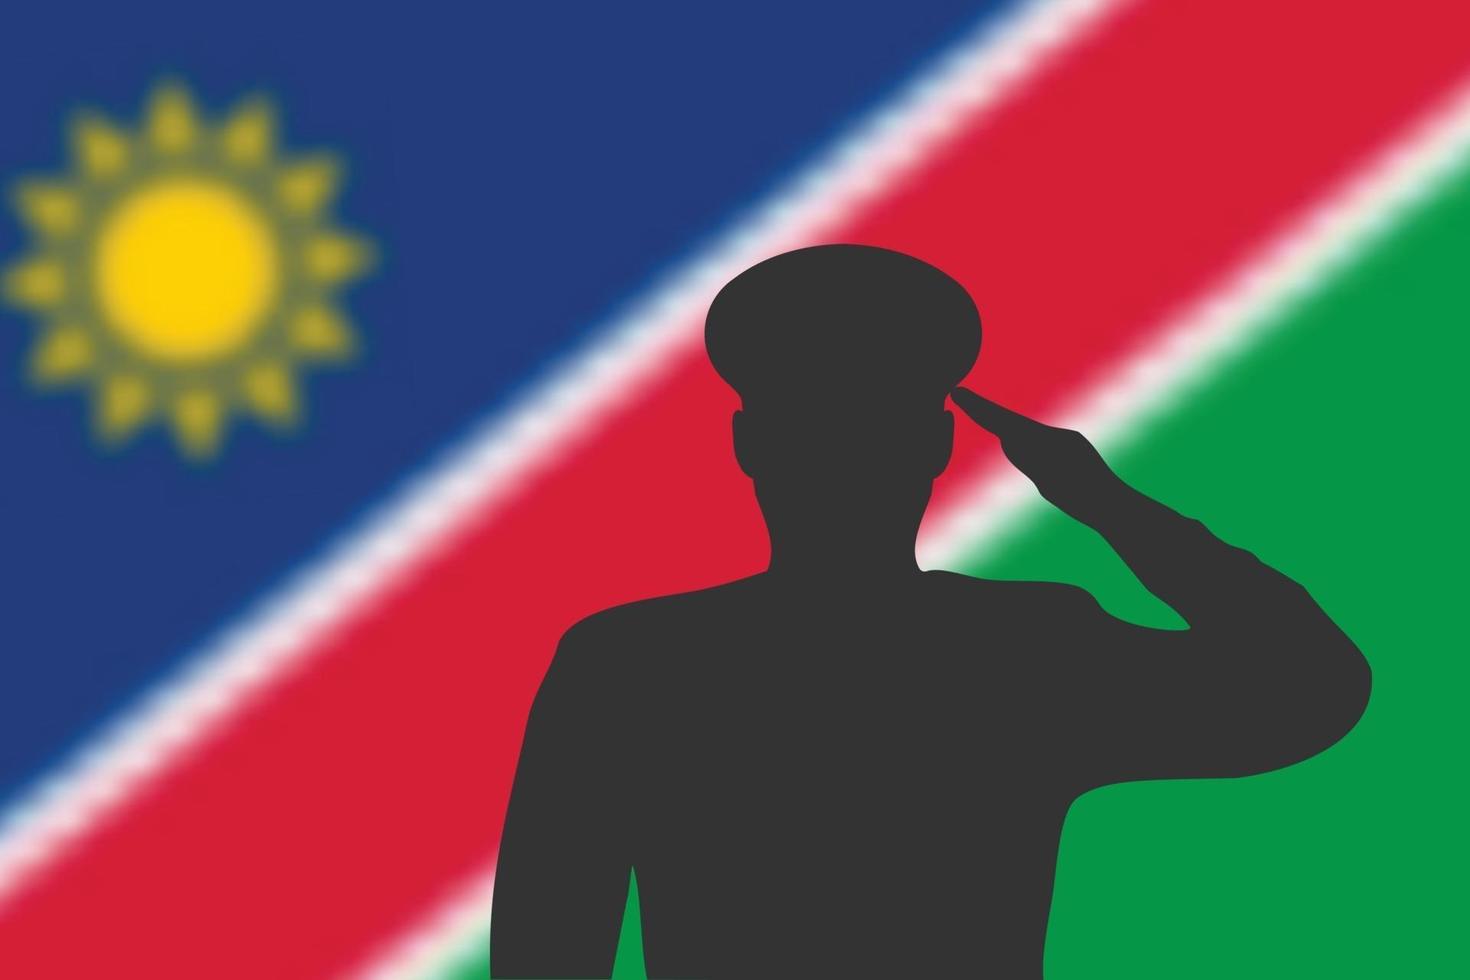 Lötsilhouette auf Unschärfehintergrund mit Namibia-Flagge. vektor